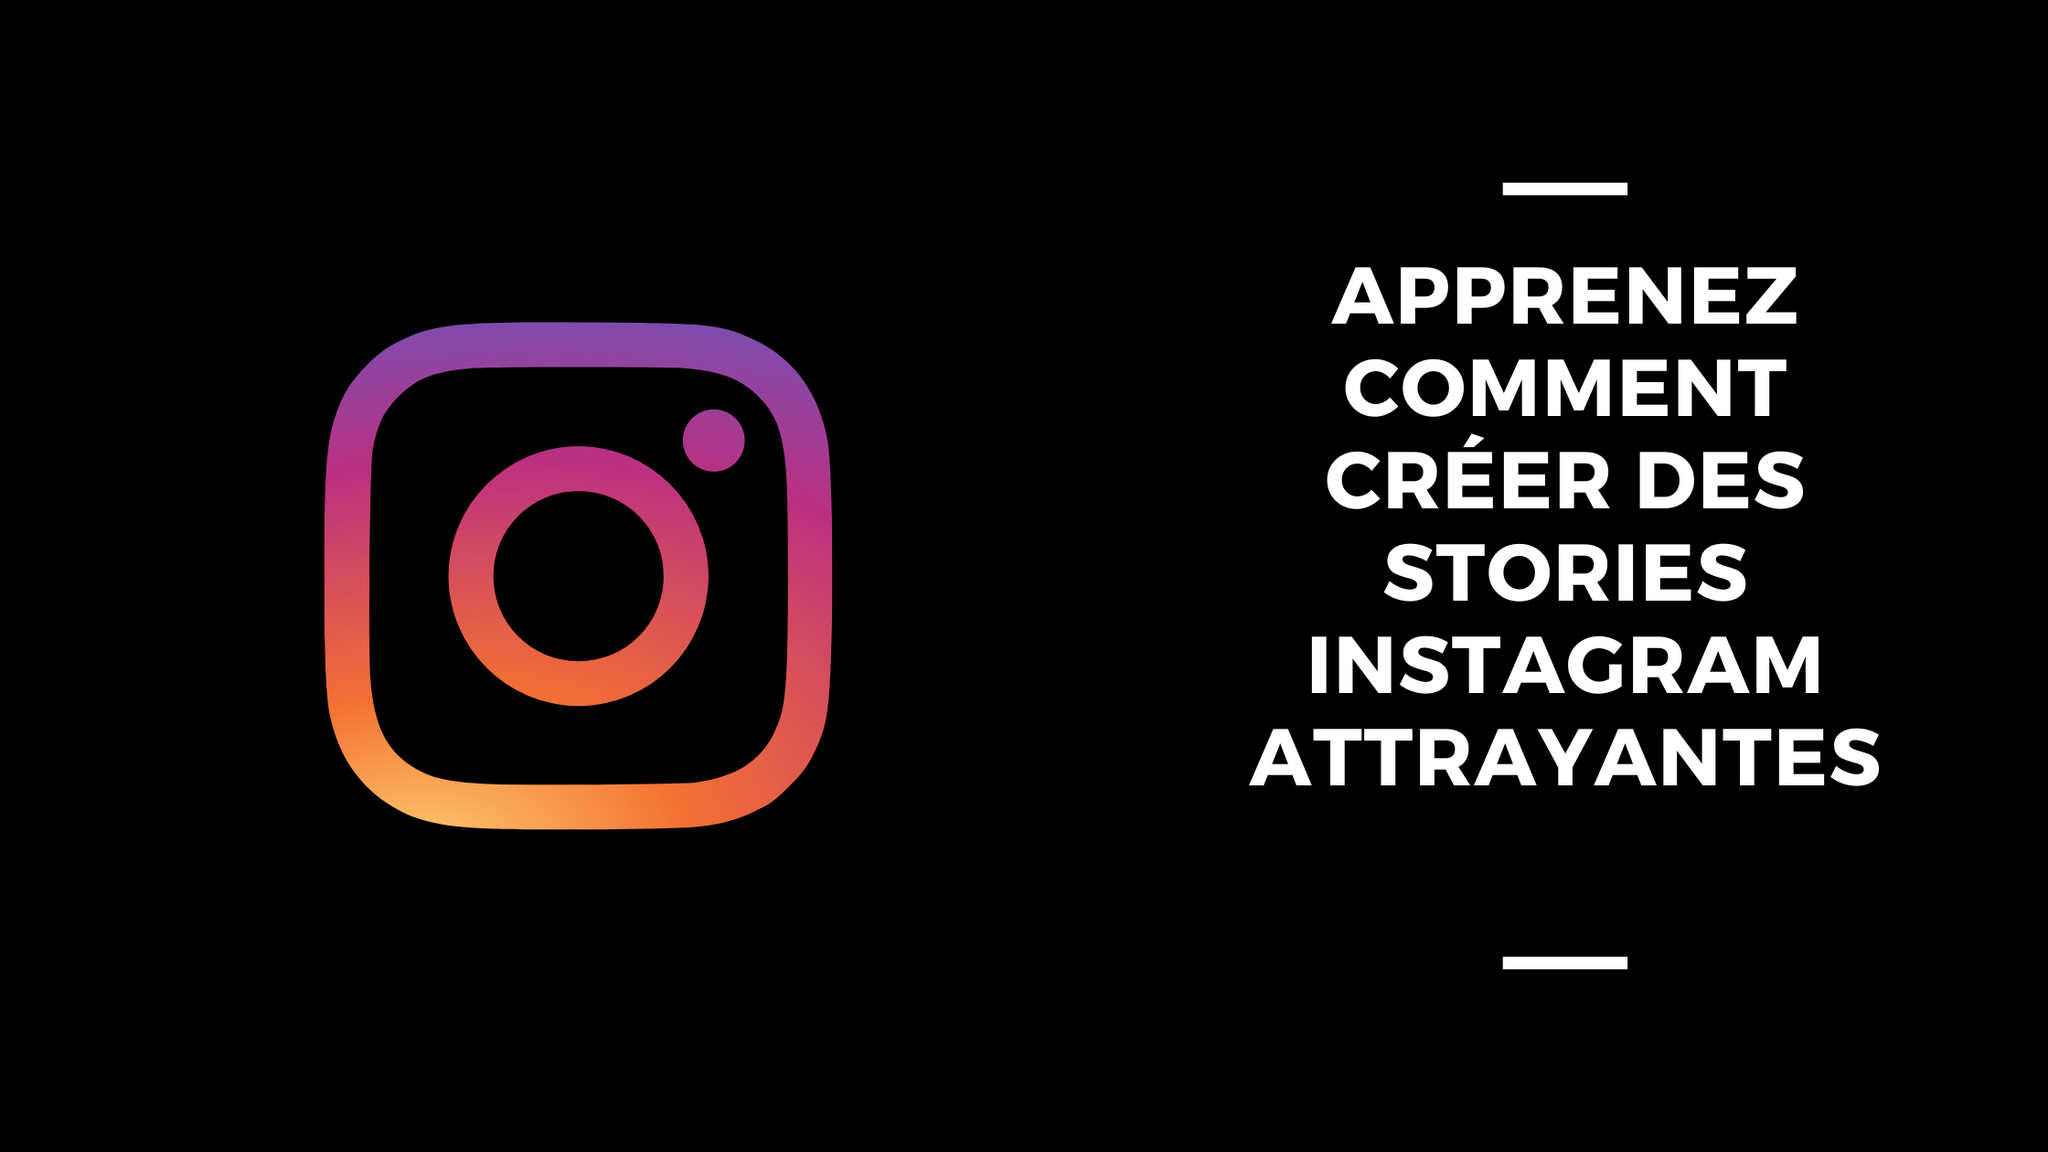 Apprenez Comment Créer Des Stories Instagram Attrayantes